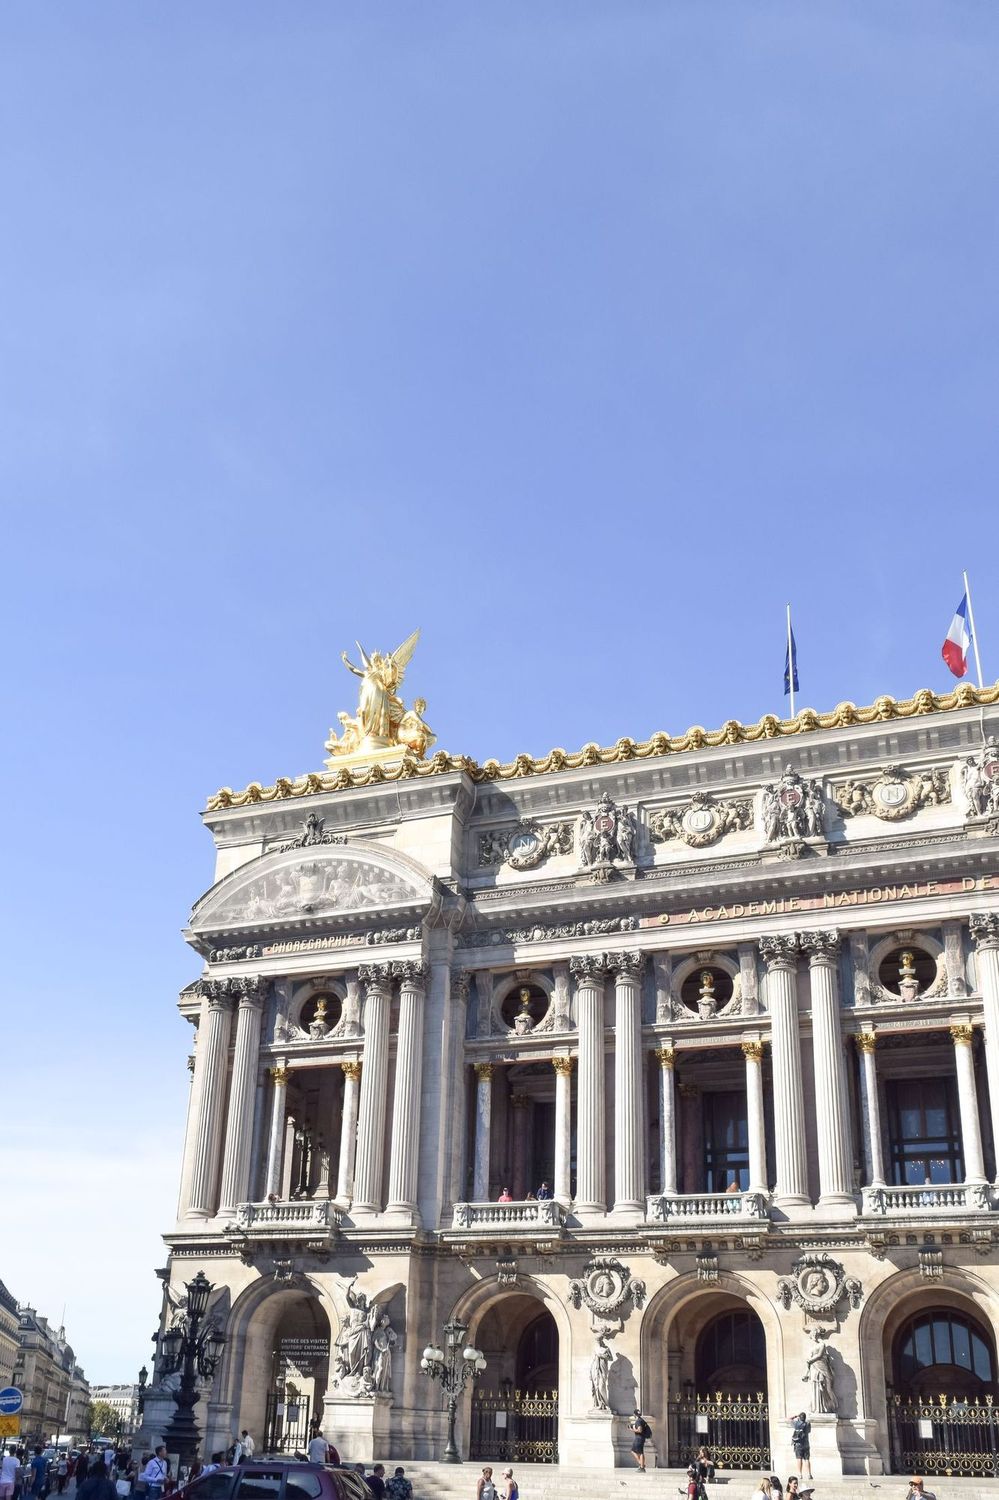 Palais Garnier: Paris’ Finest Opera House